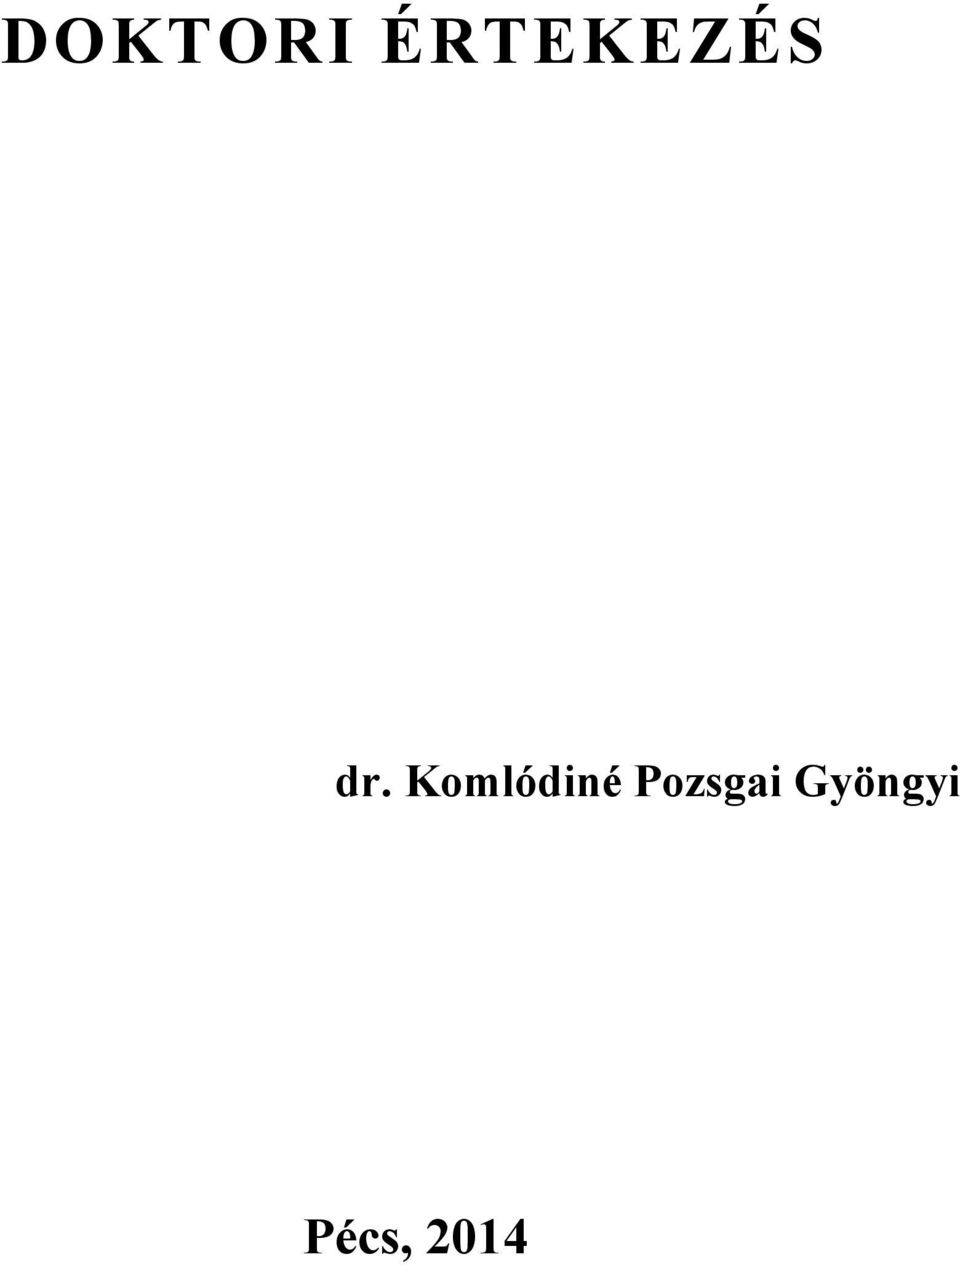 DOKTORI ÉRTEKEZÉS. dr. Komlódiné Pozsgai Gyöngyi - PDF Ingyenes letöltés